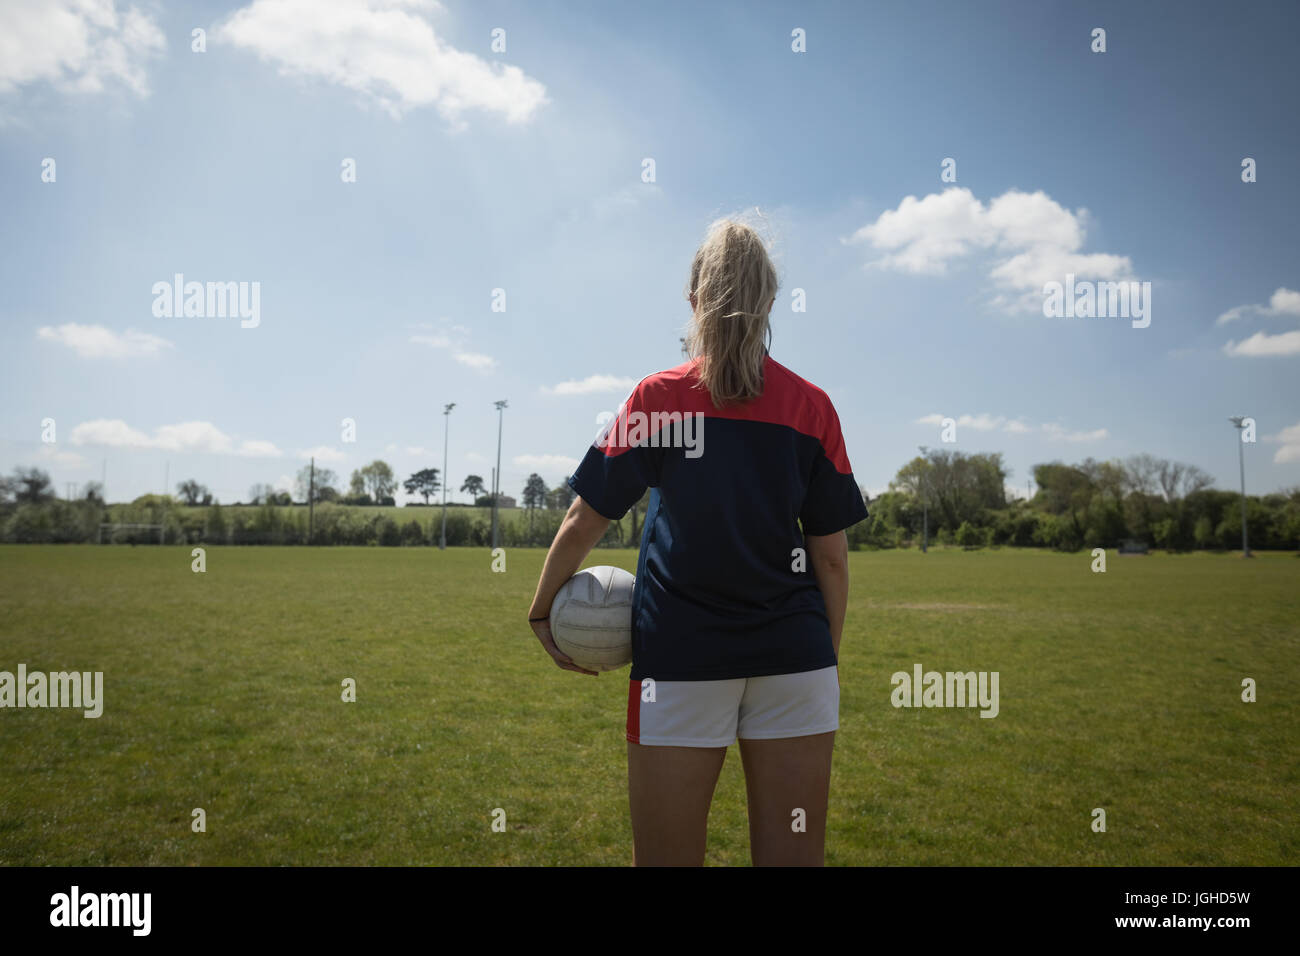 Vue arrière du joueur de soccer ball avec l'article sur terrain against sky Banque D'Images